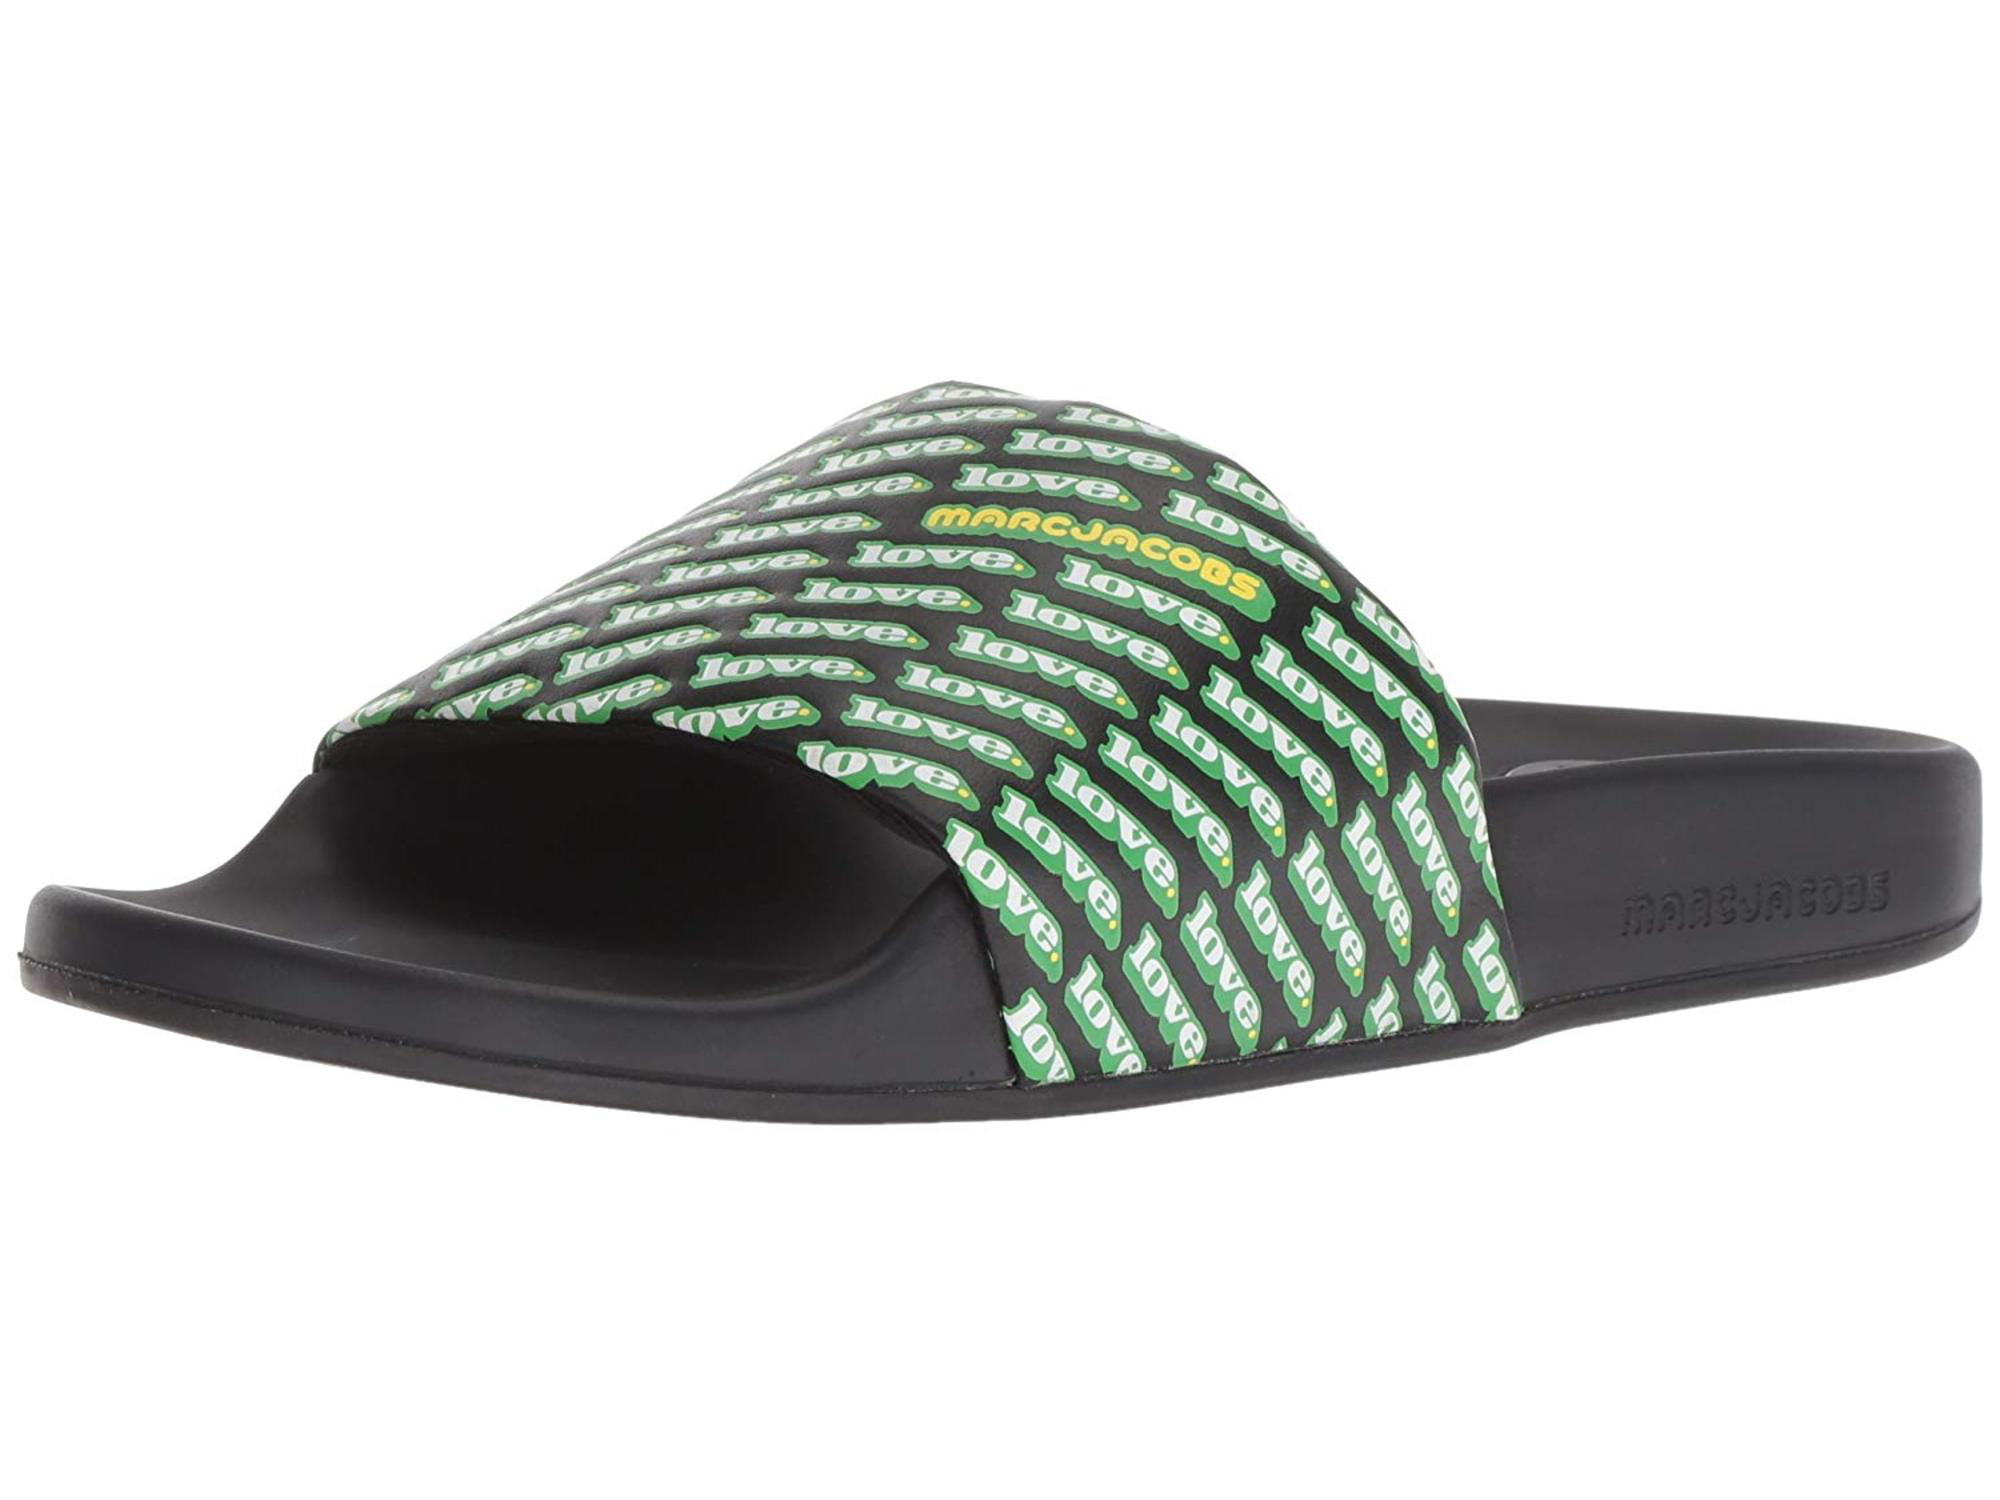 marc jacobs slide sandals